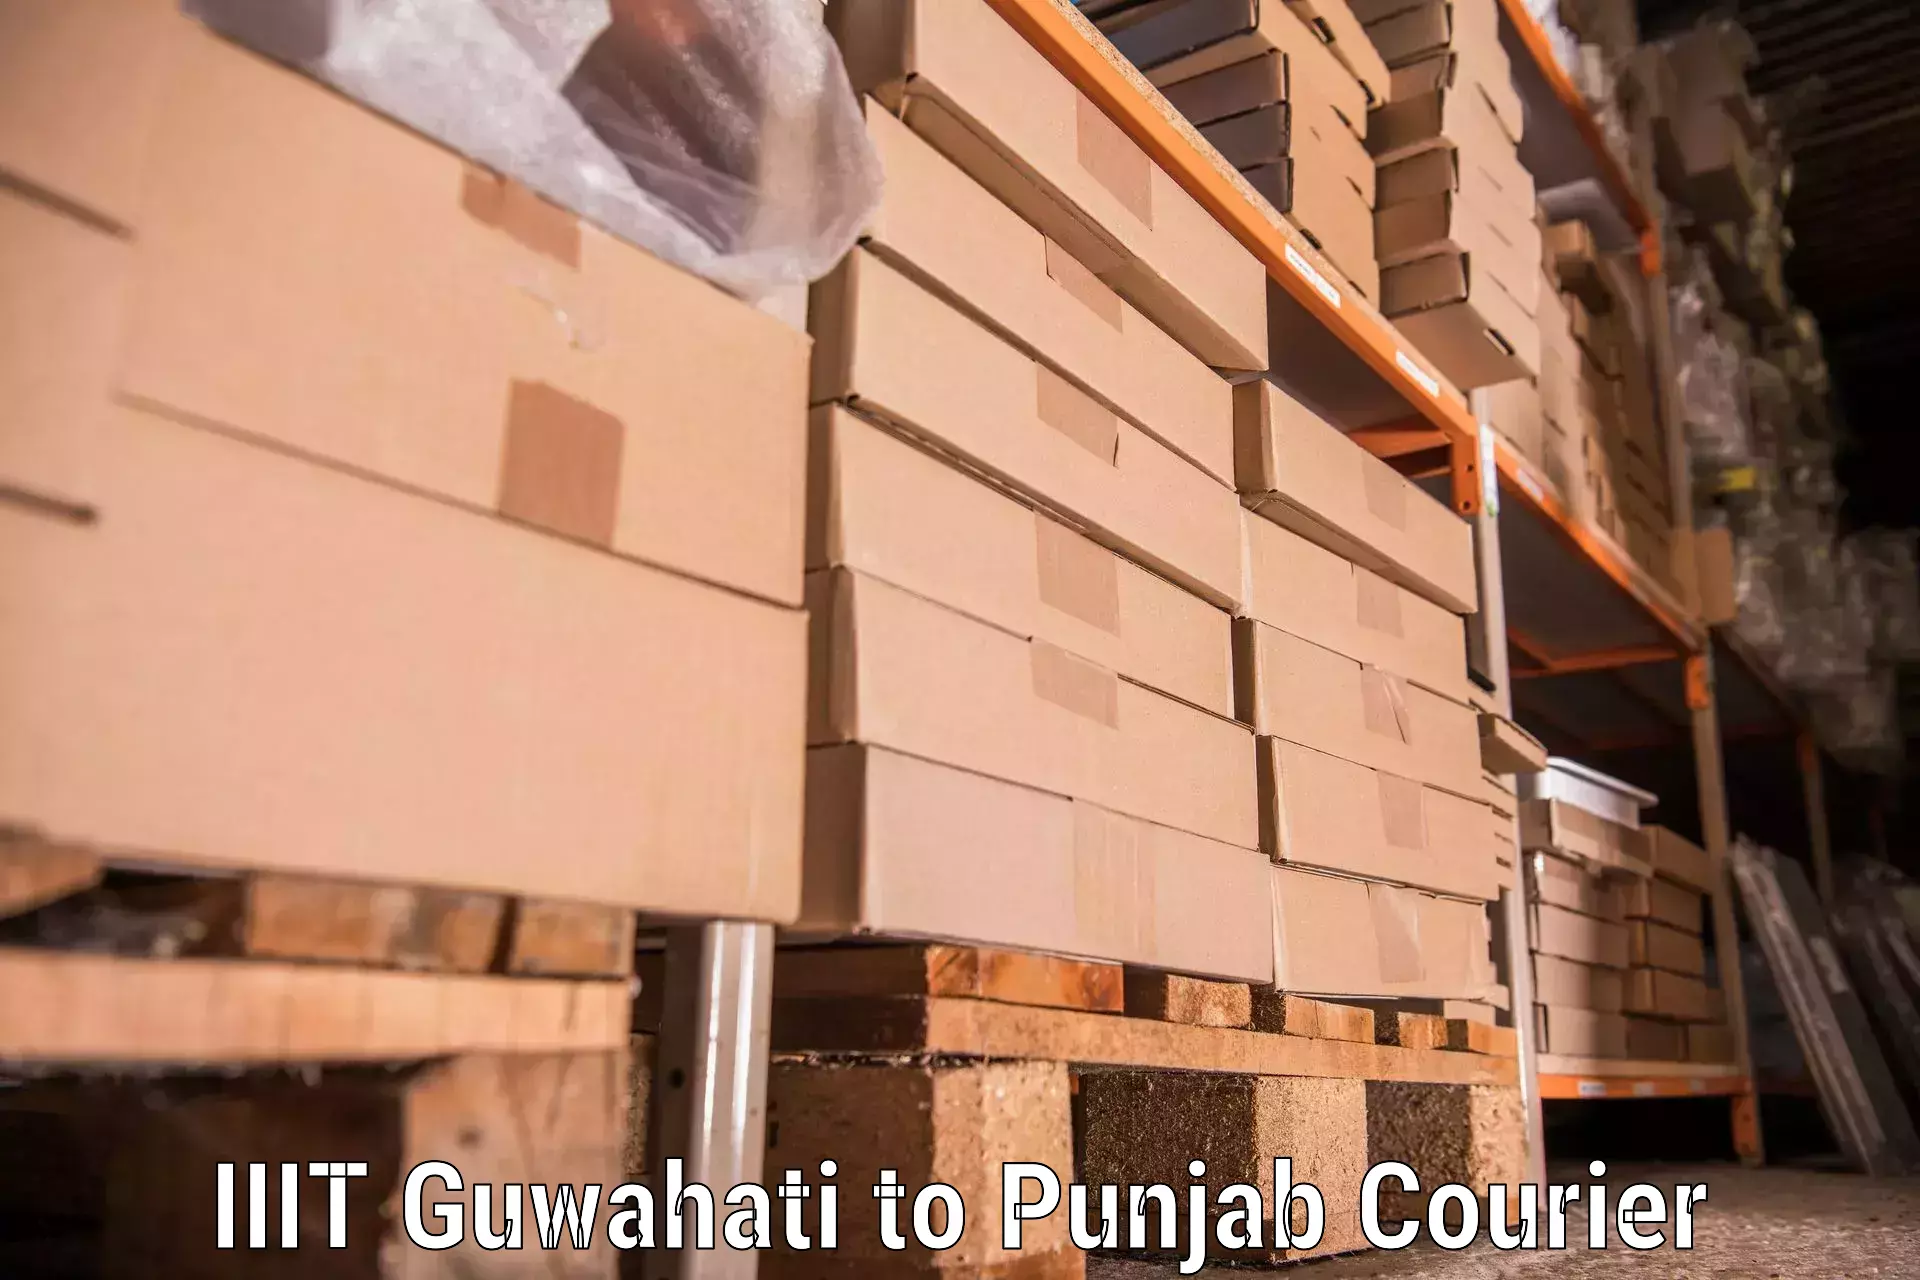 Residential moving experts IIIT Guwahati to Punjab